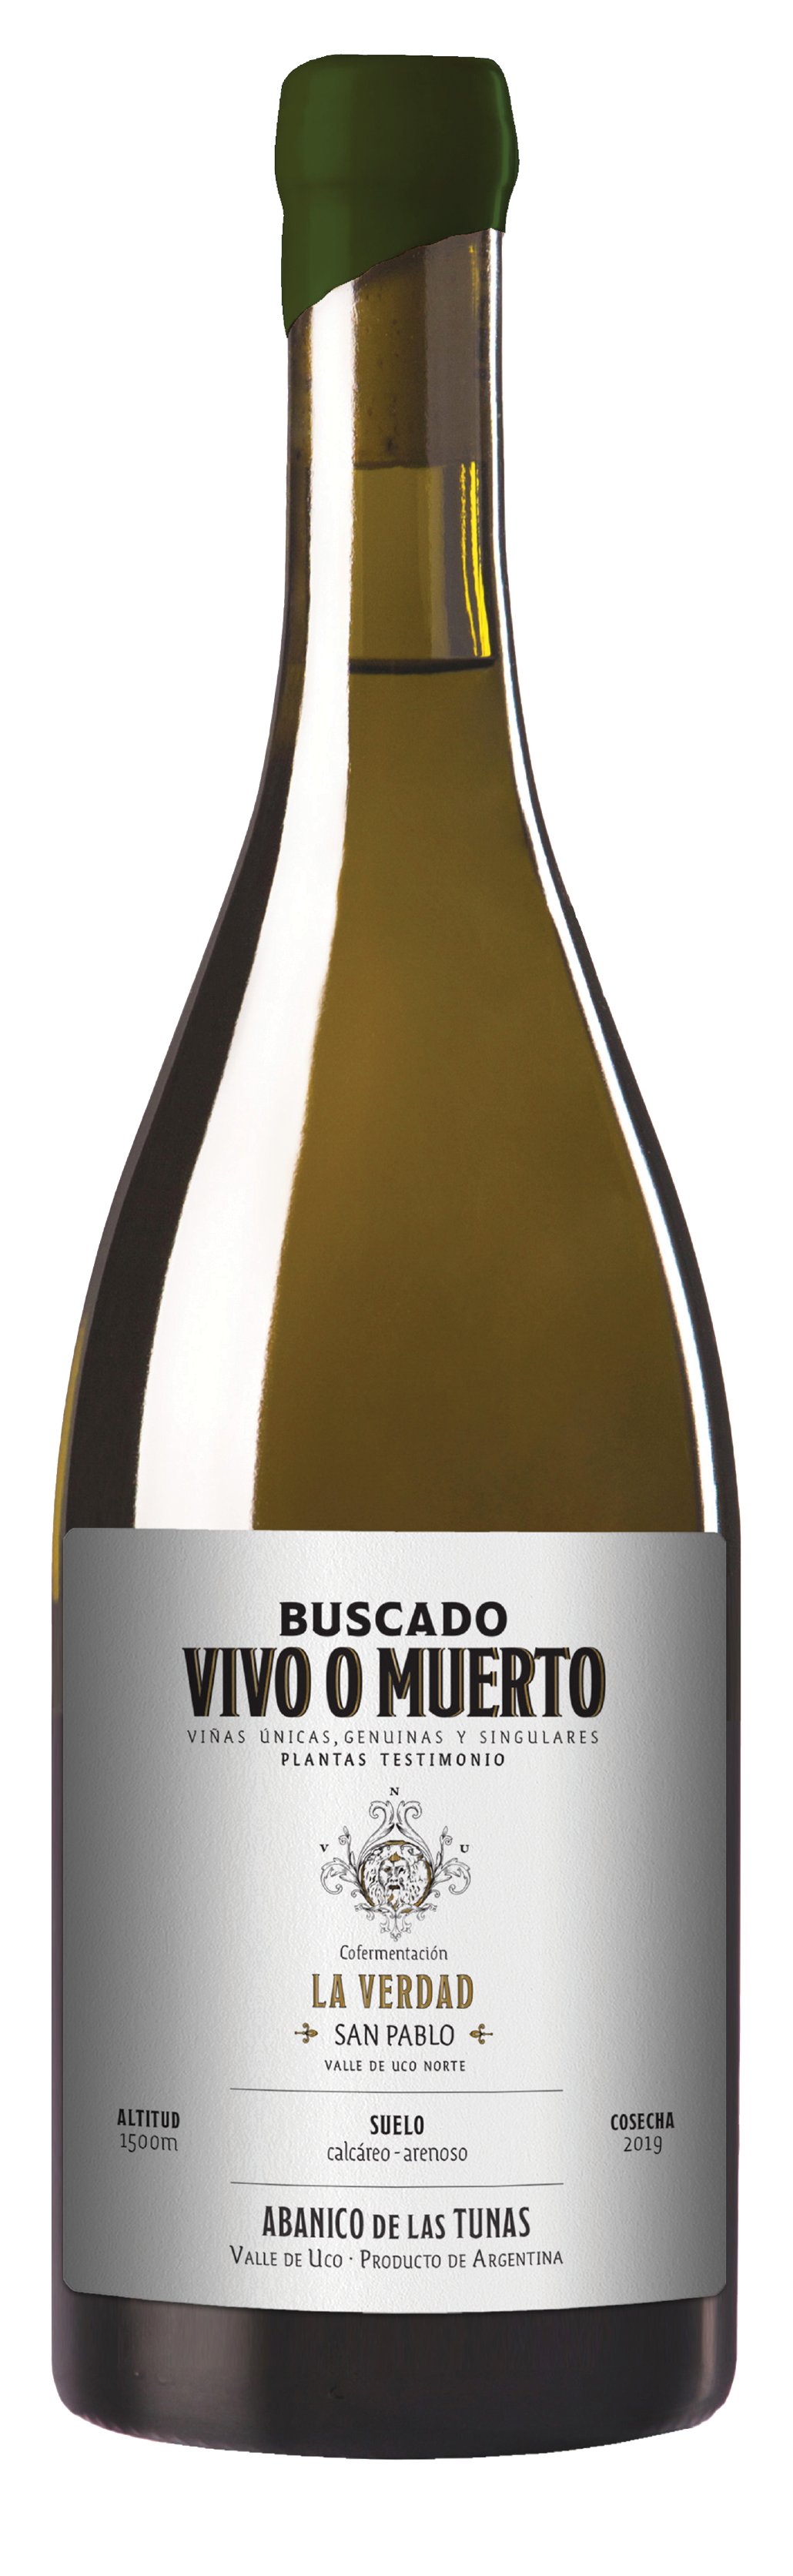 Buscado Vivo o Muerto<br />2019 La Verdad - San Pablo Chardonnay<br>Argentina